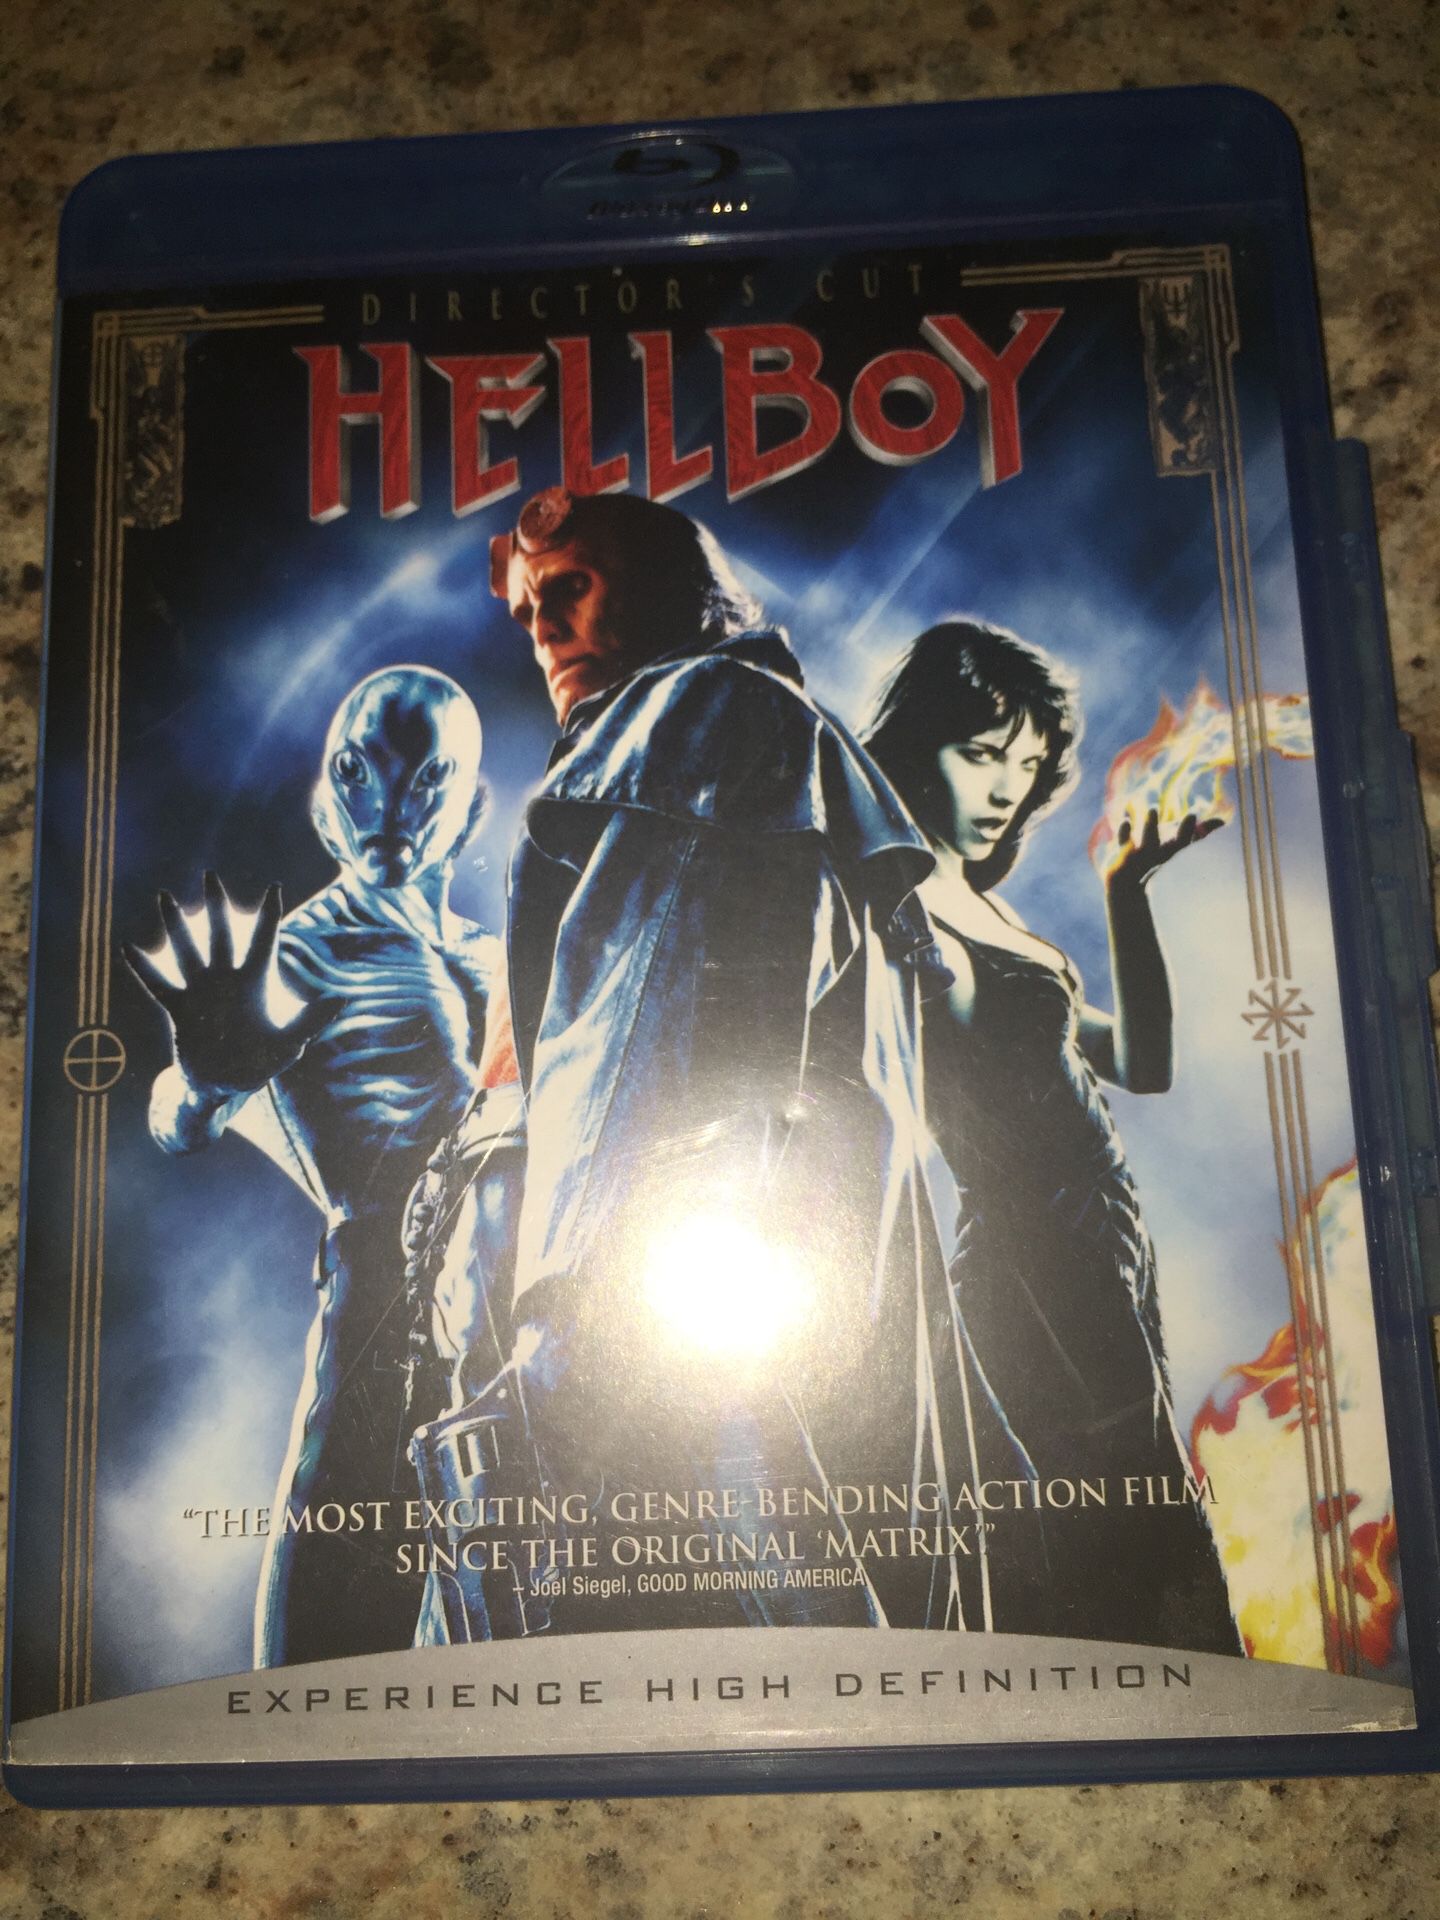 HellBoy BluRay HighDefinition